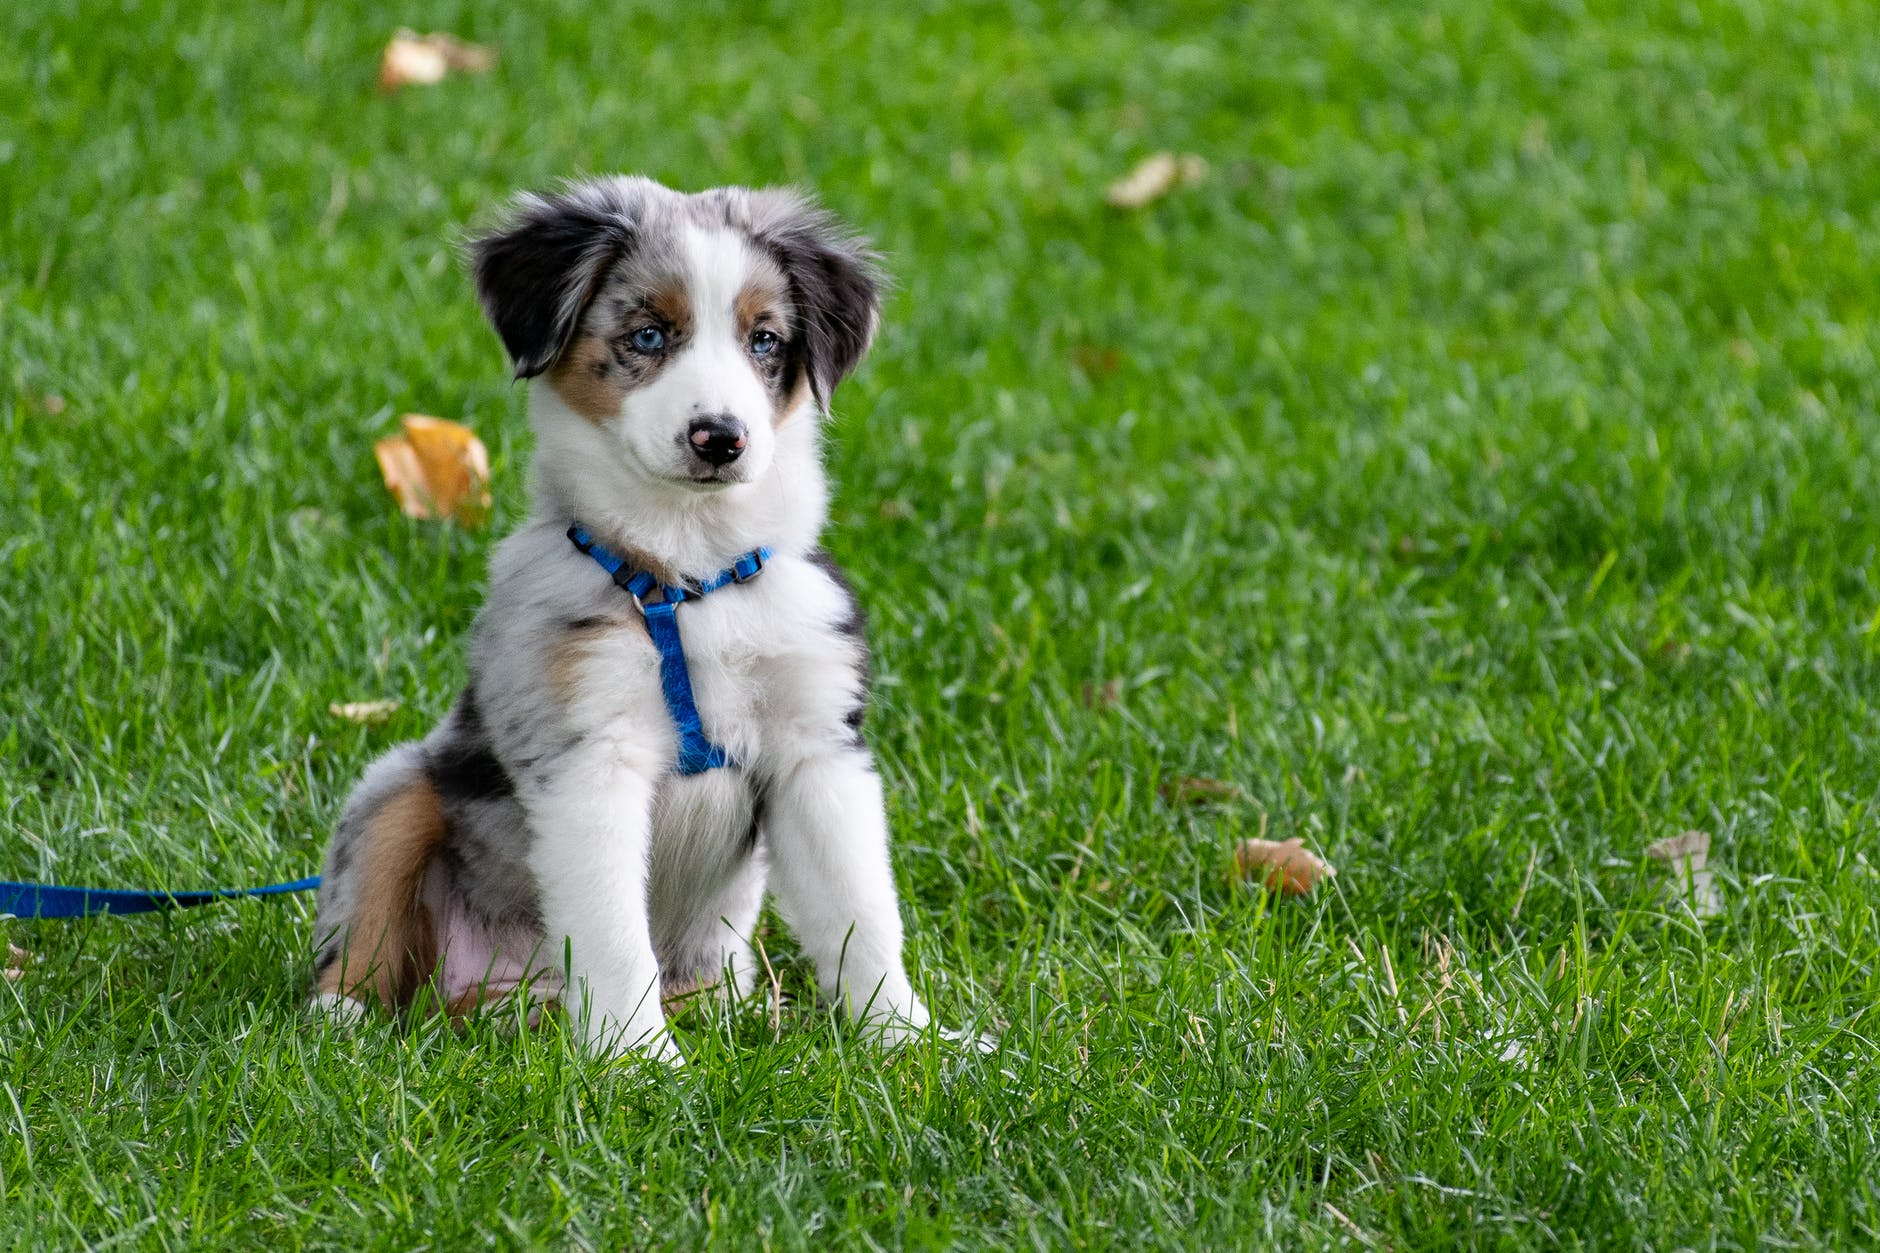 puppy on grass field